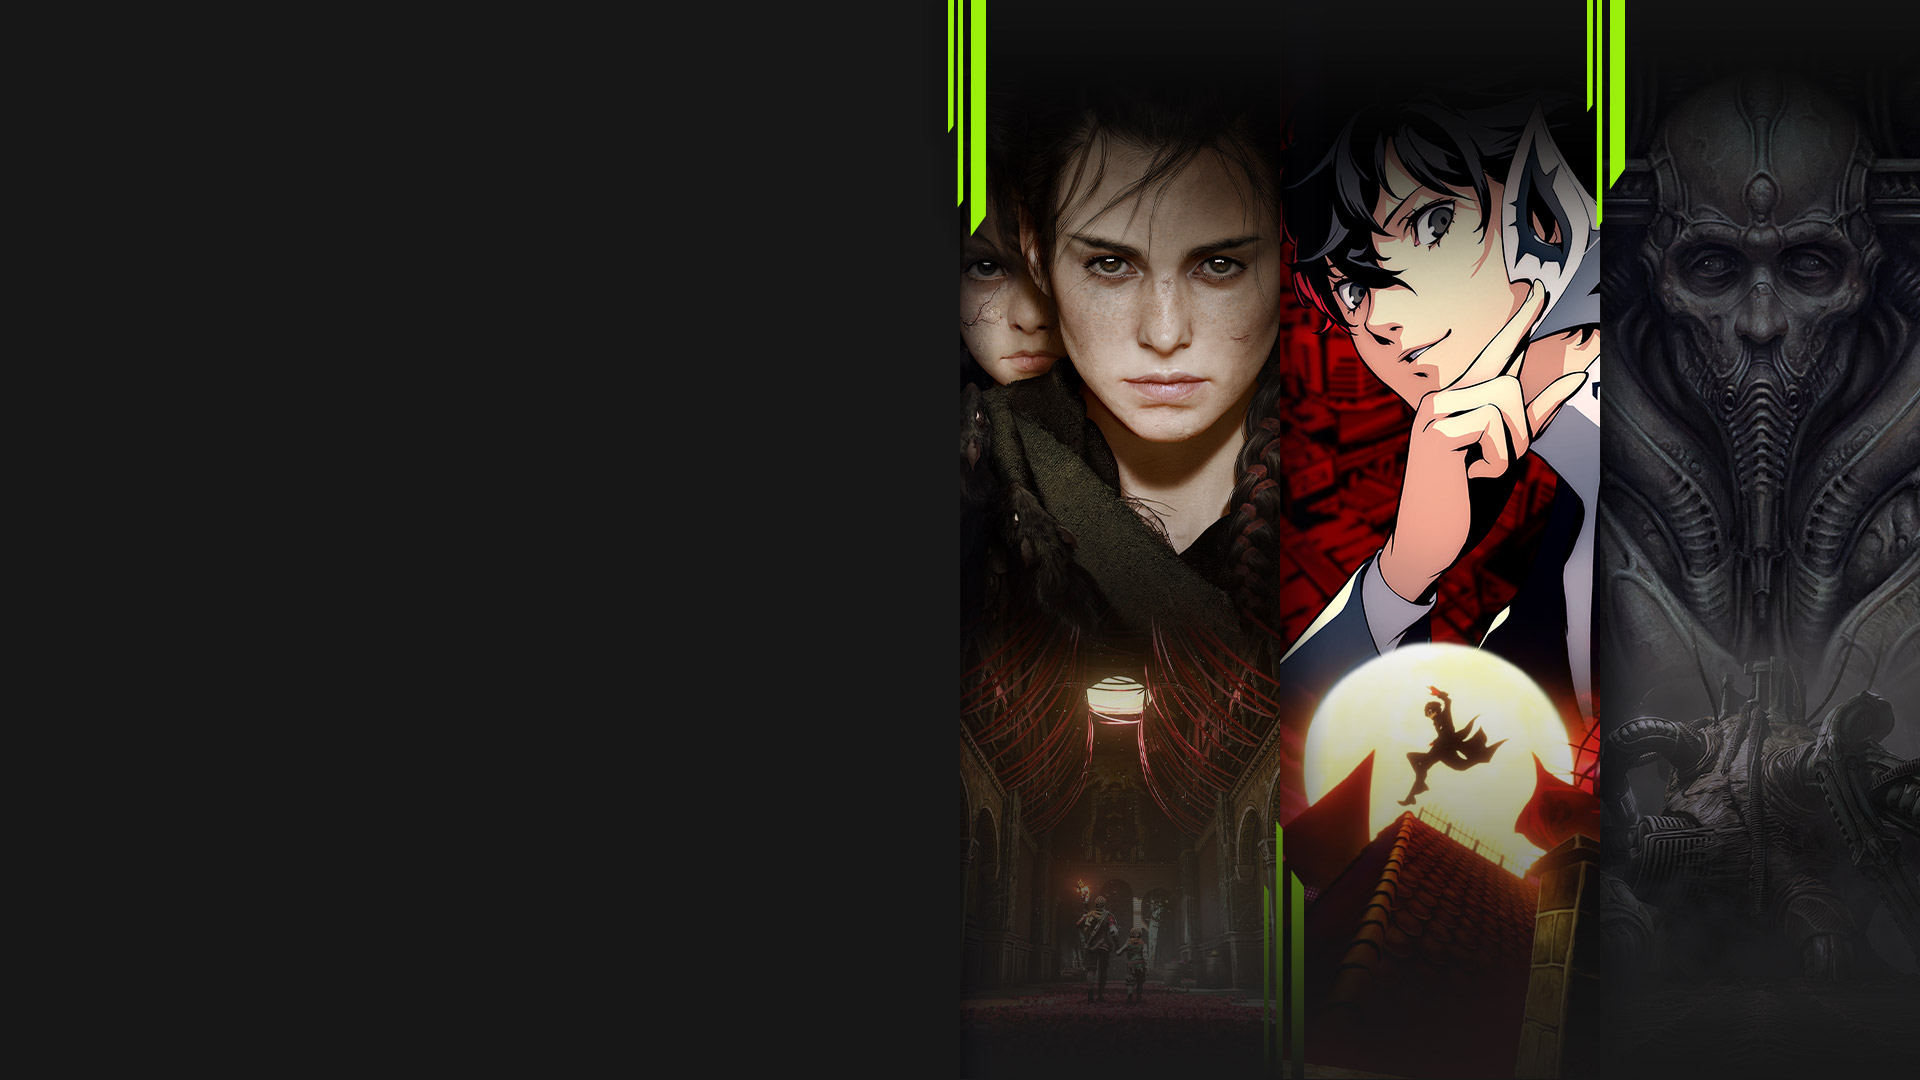 Arte de vários jogos disponíveis com o Xbox Game Pass, incluindo A Plague Tale: Requiem, Persona 5 Royal, Scorn e Chivalry 2